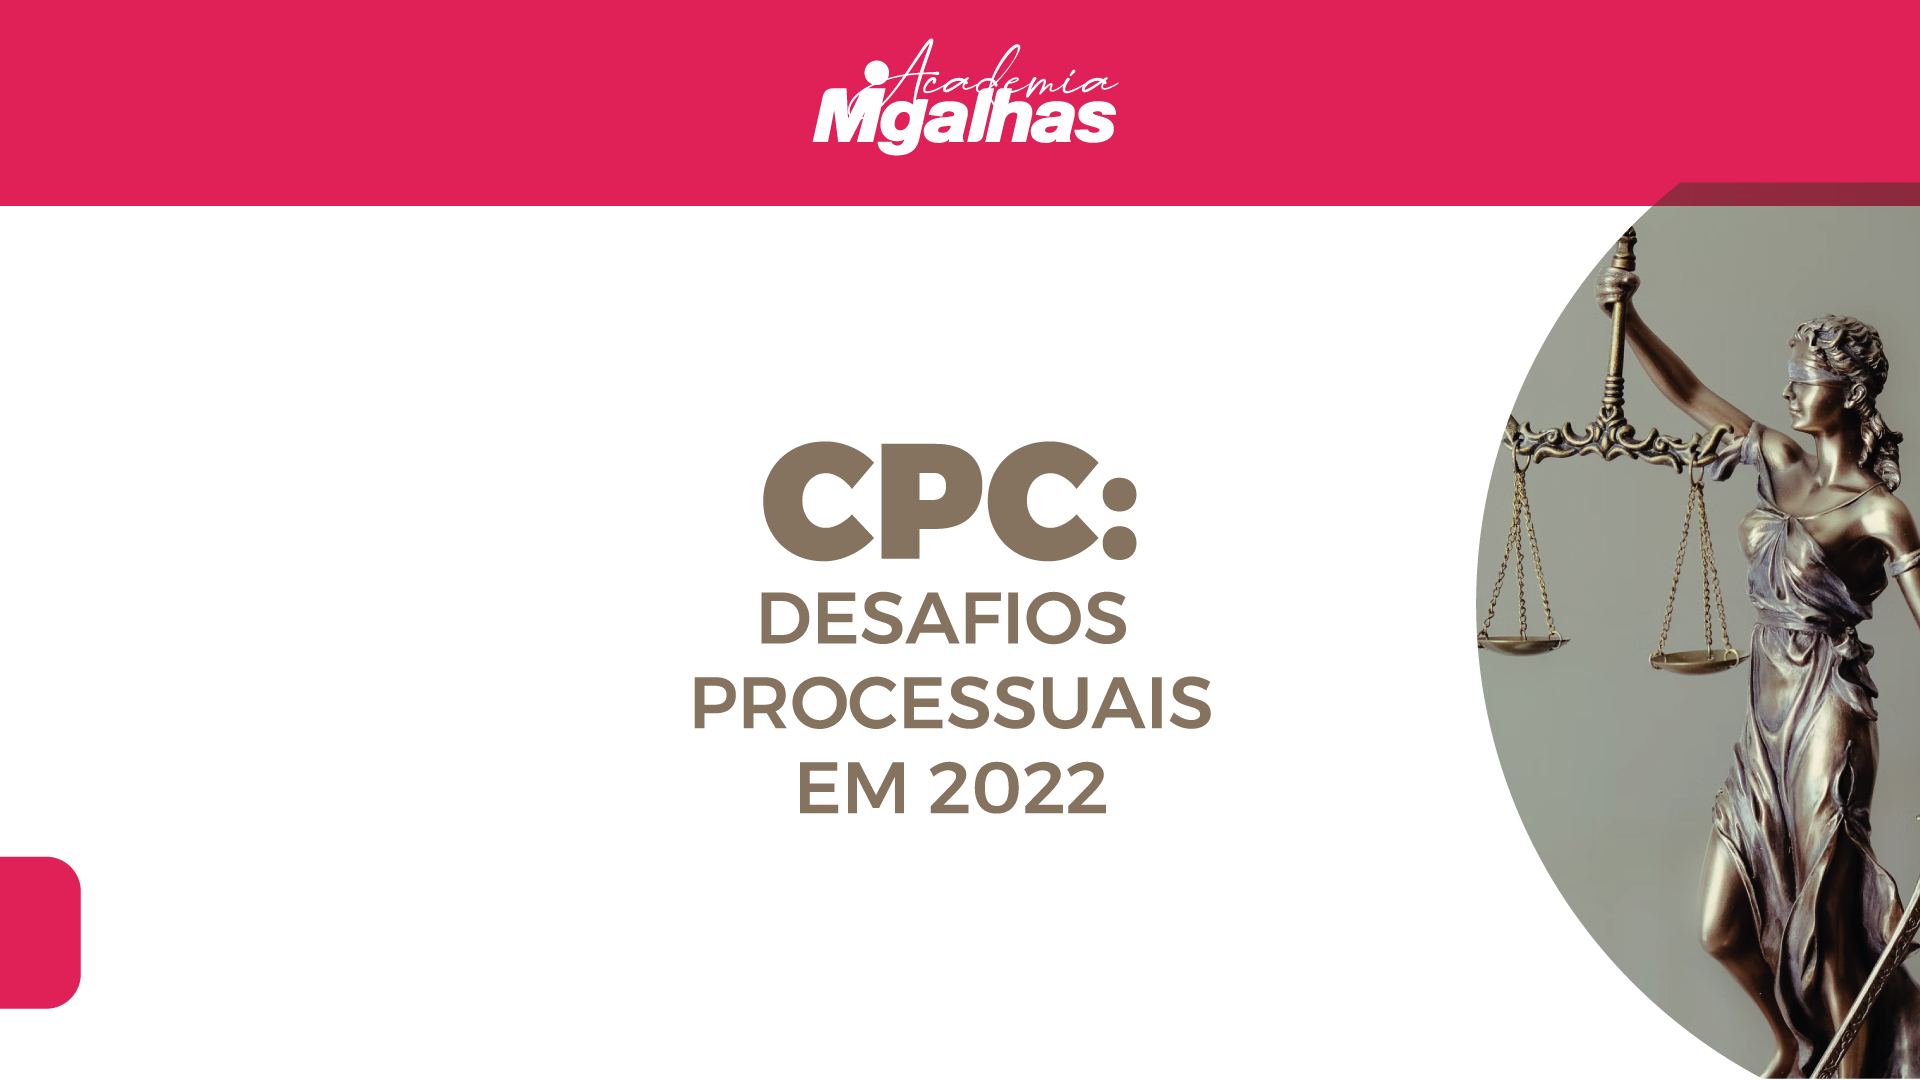 CPC - Desafios processuais em 2022